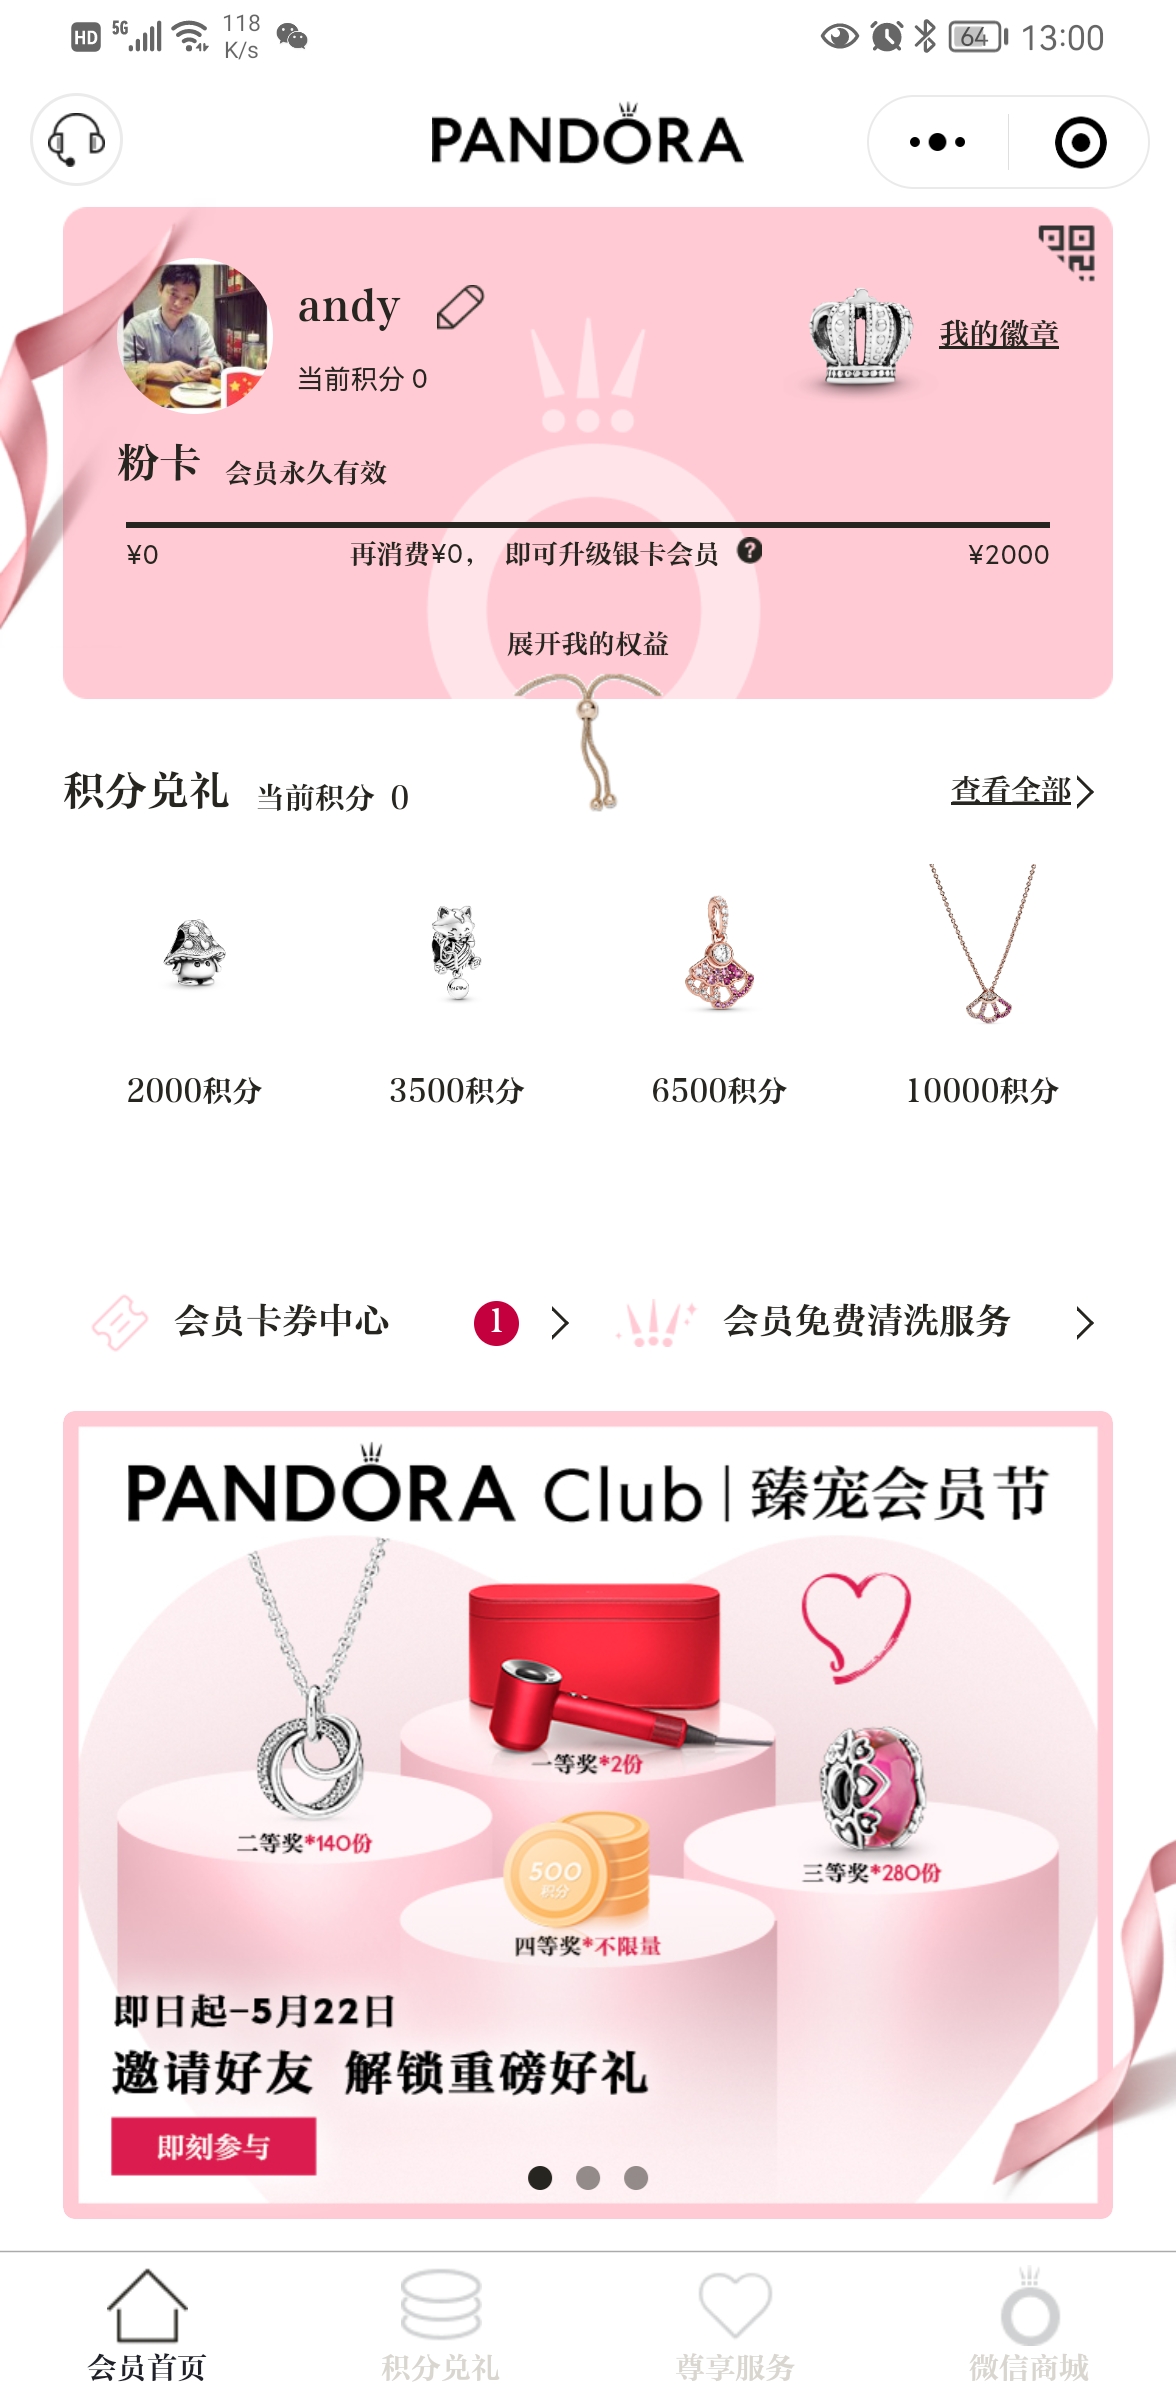 Pandora潘多拉會員俱樂部小程序